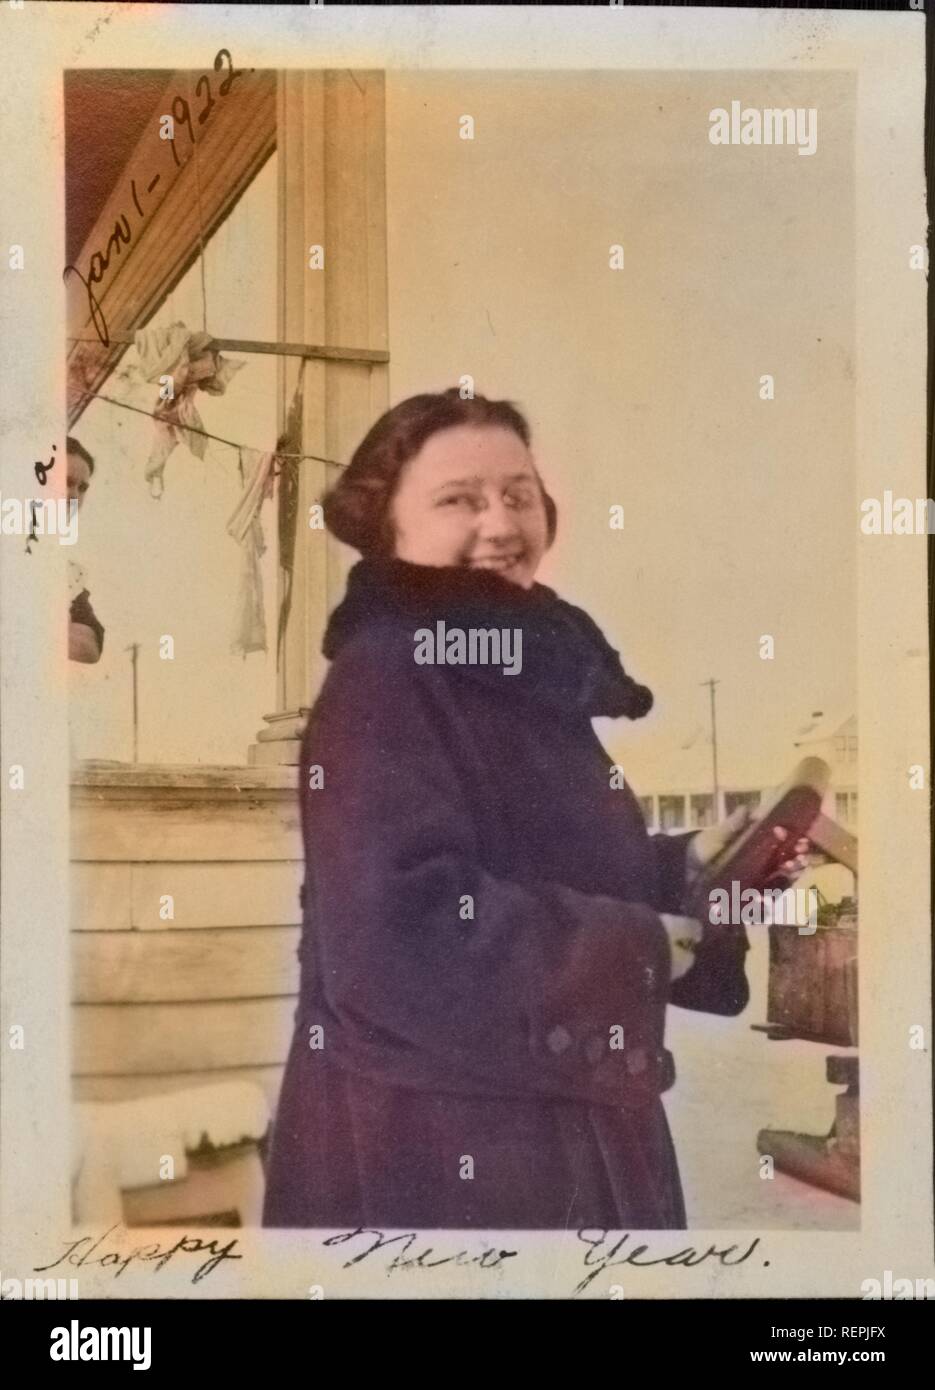 Junge Frau lächelt und schaut über ihre Schulter am Neujahrstag halten Sie ein Medium Format falten Kamera, 1922. Hinweis: Das Bild hat digital über ein modernes Prozess eingefärbt worden. Farben möglicherweise nicht sein - genau. () Stockfoto